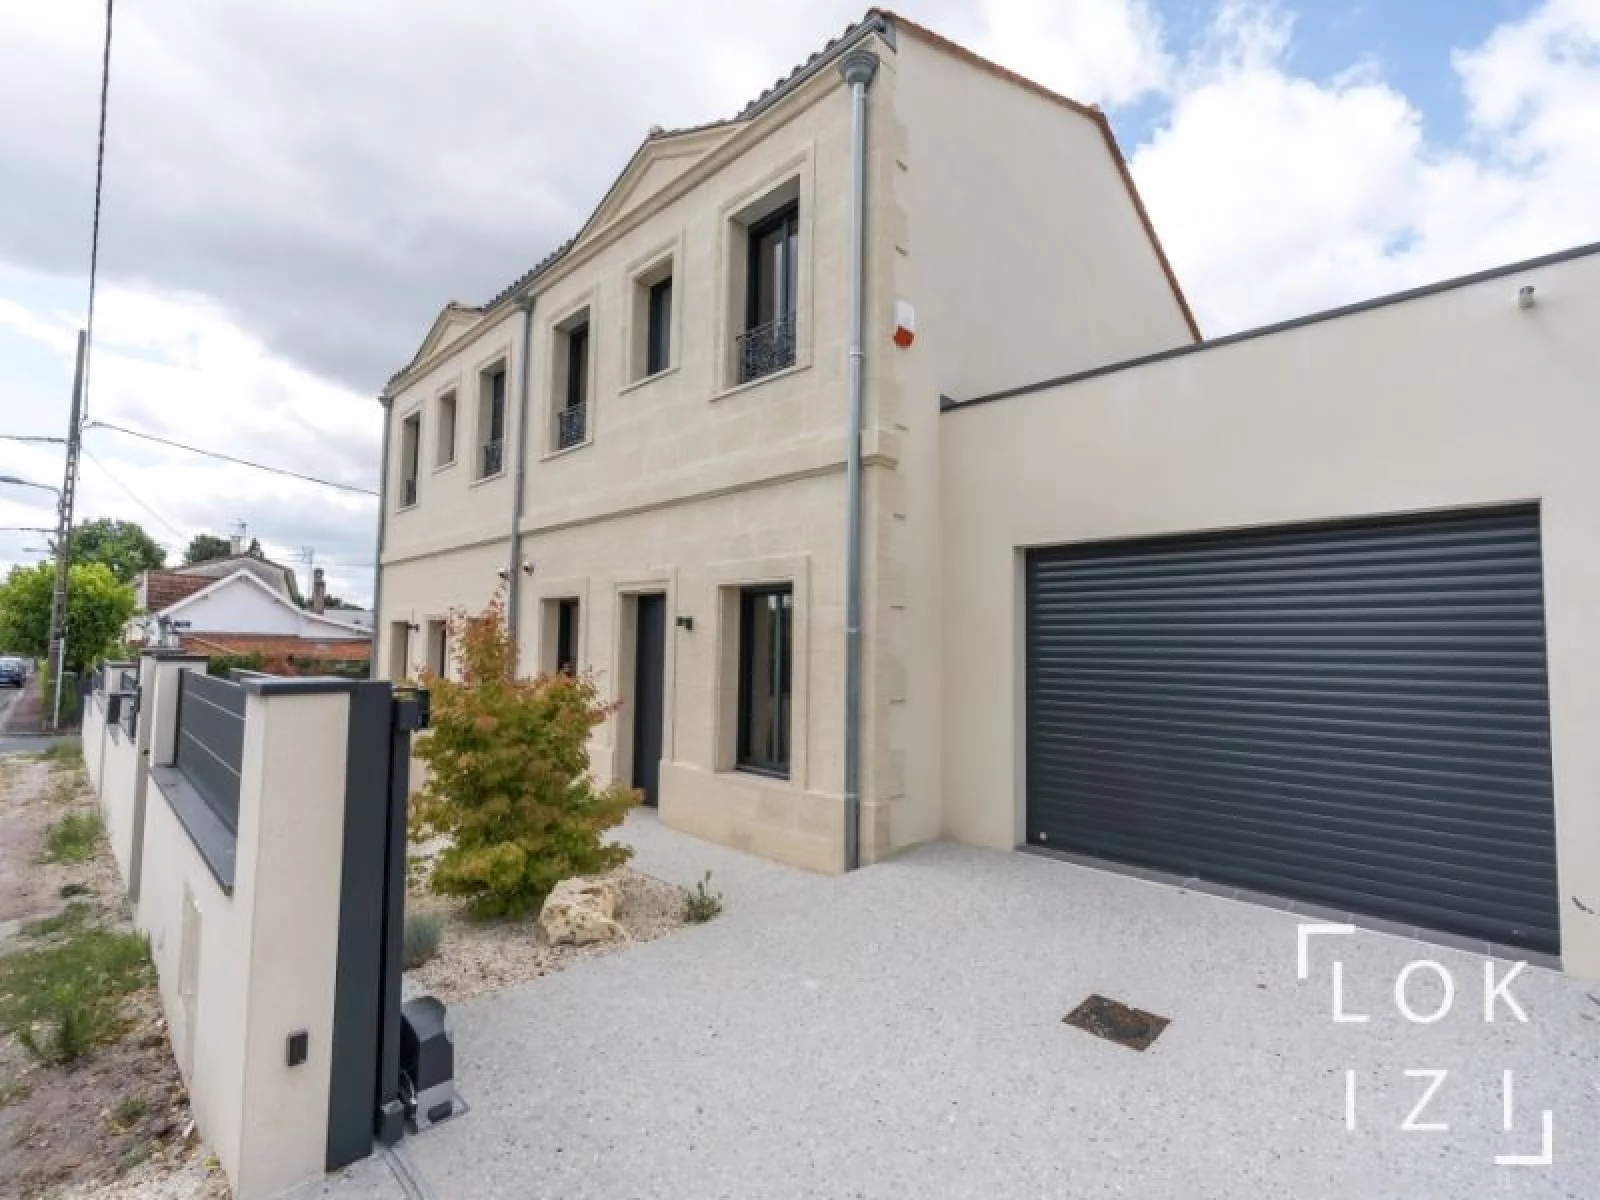 Location maison meublée 90m² + jardin 85m² + garage (Bordeaux - Mérignac)